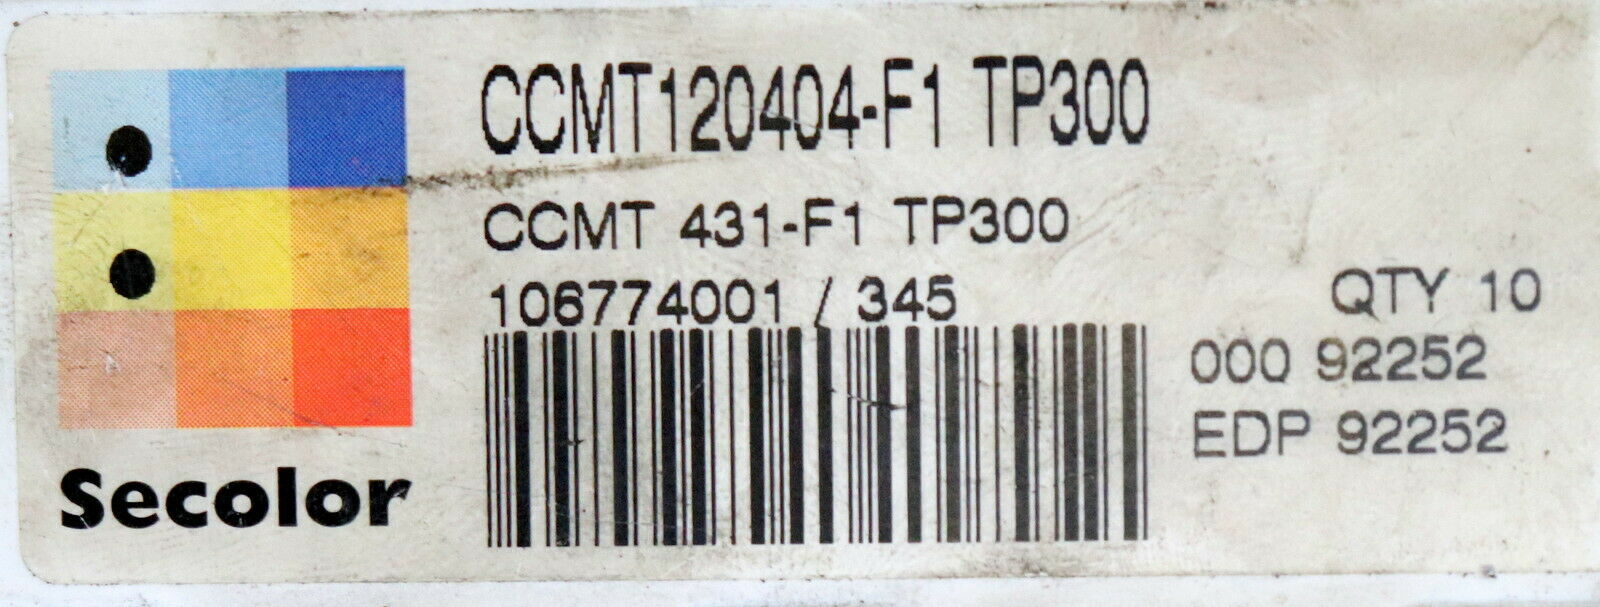 SECO 9 Stück Wendeplatten CCMT120404-F1 TP300 QTY10